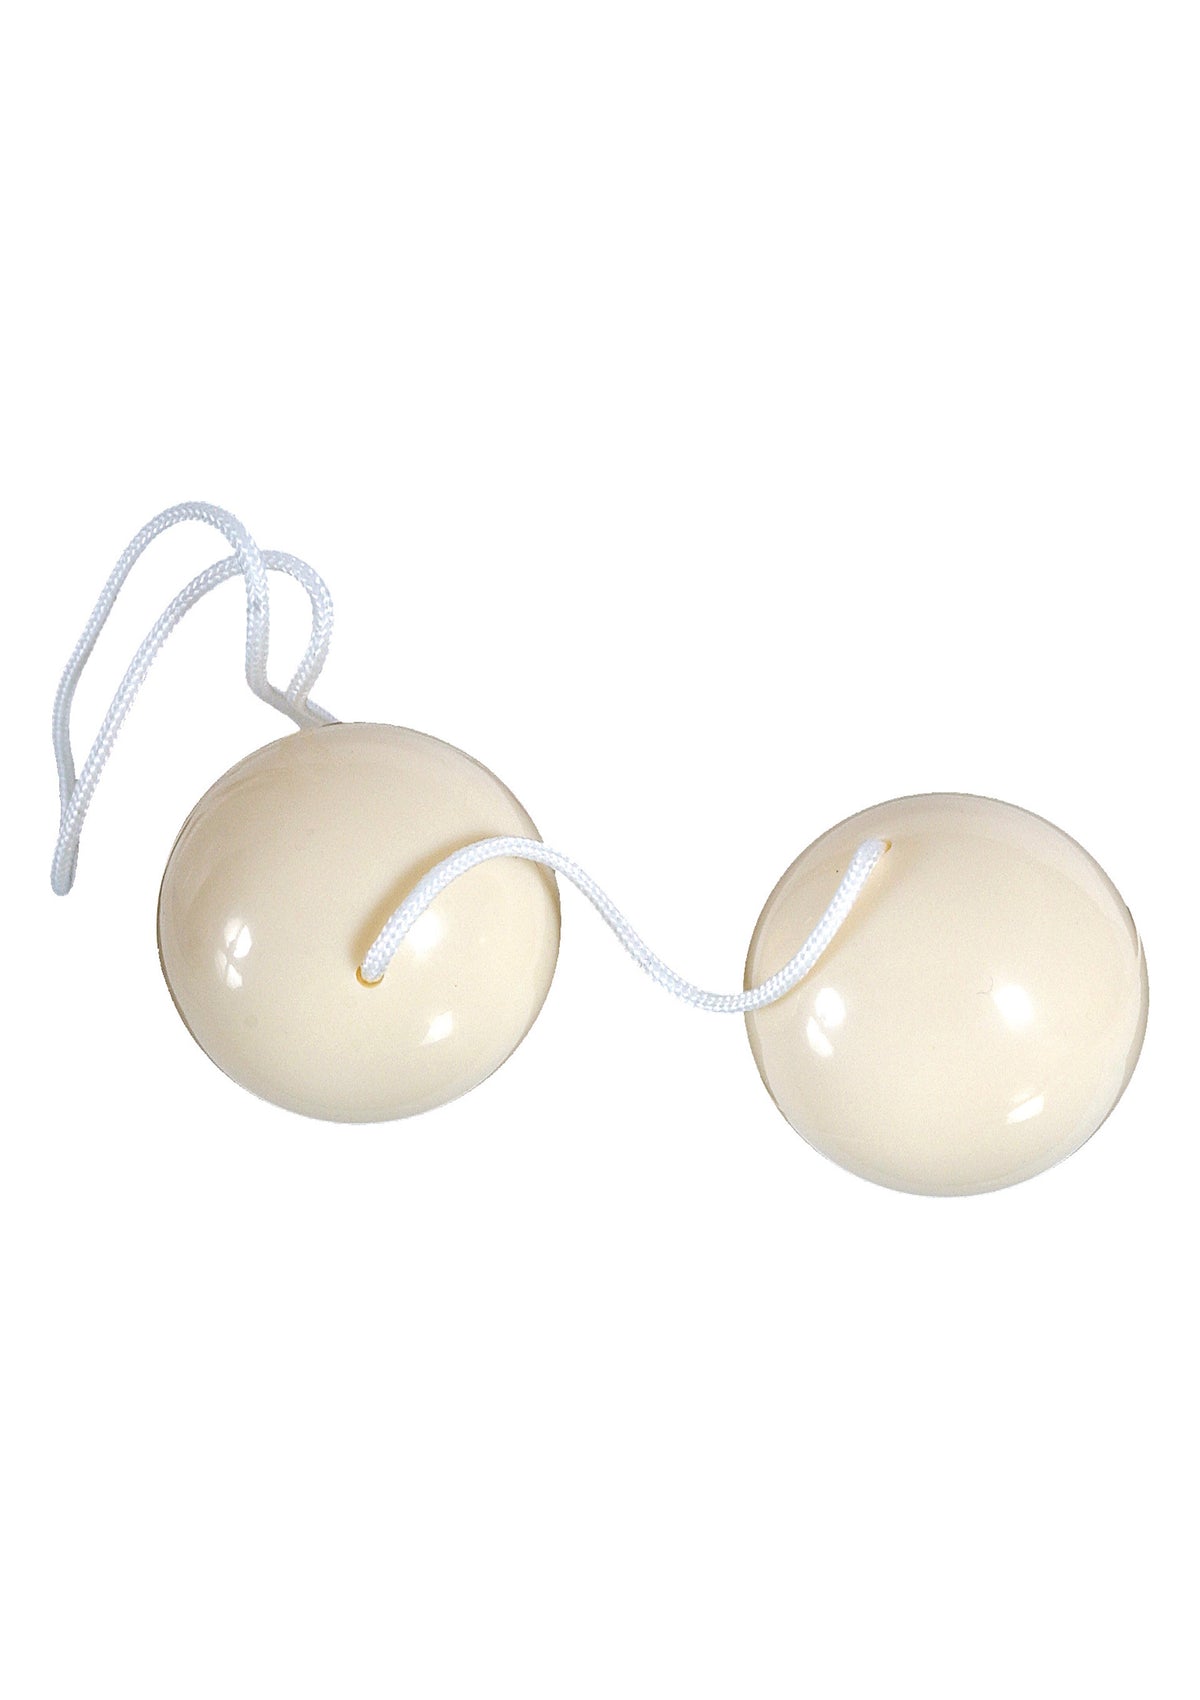 Duoballs-erotic-world-munchen.myshopify.com